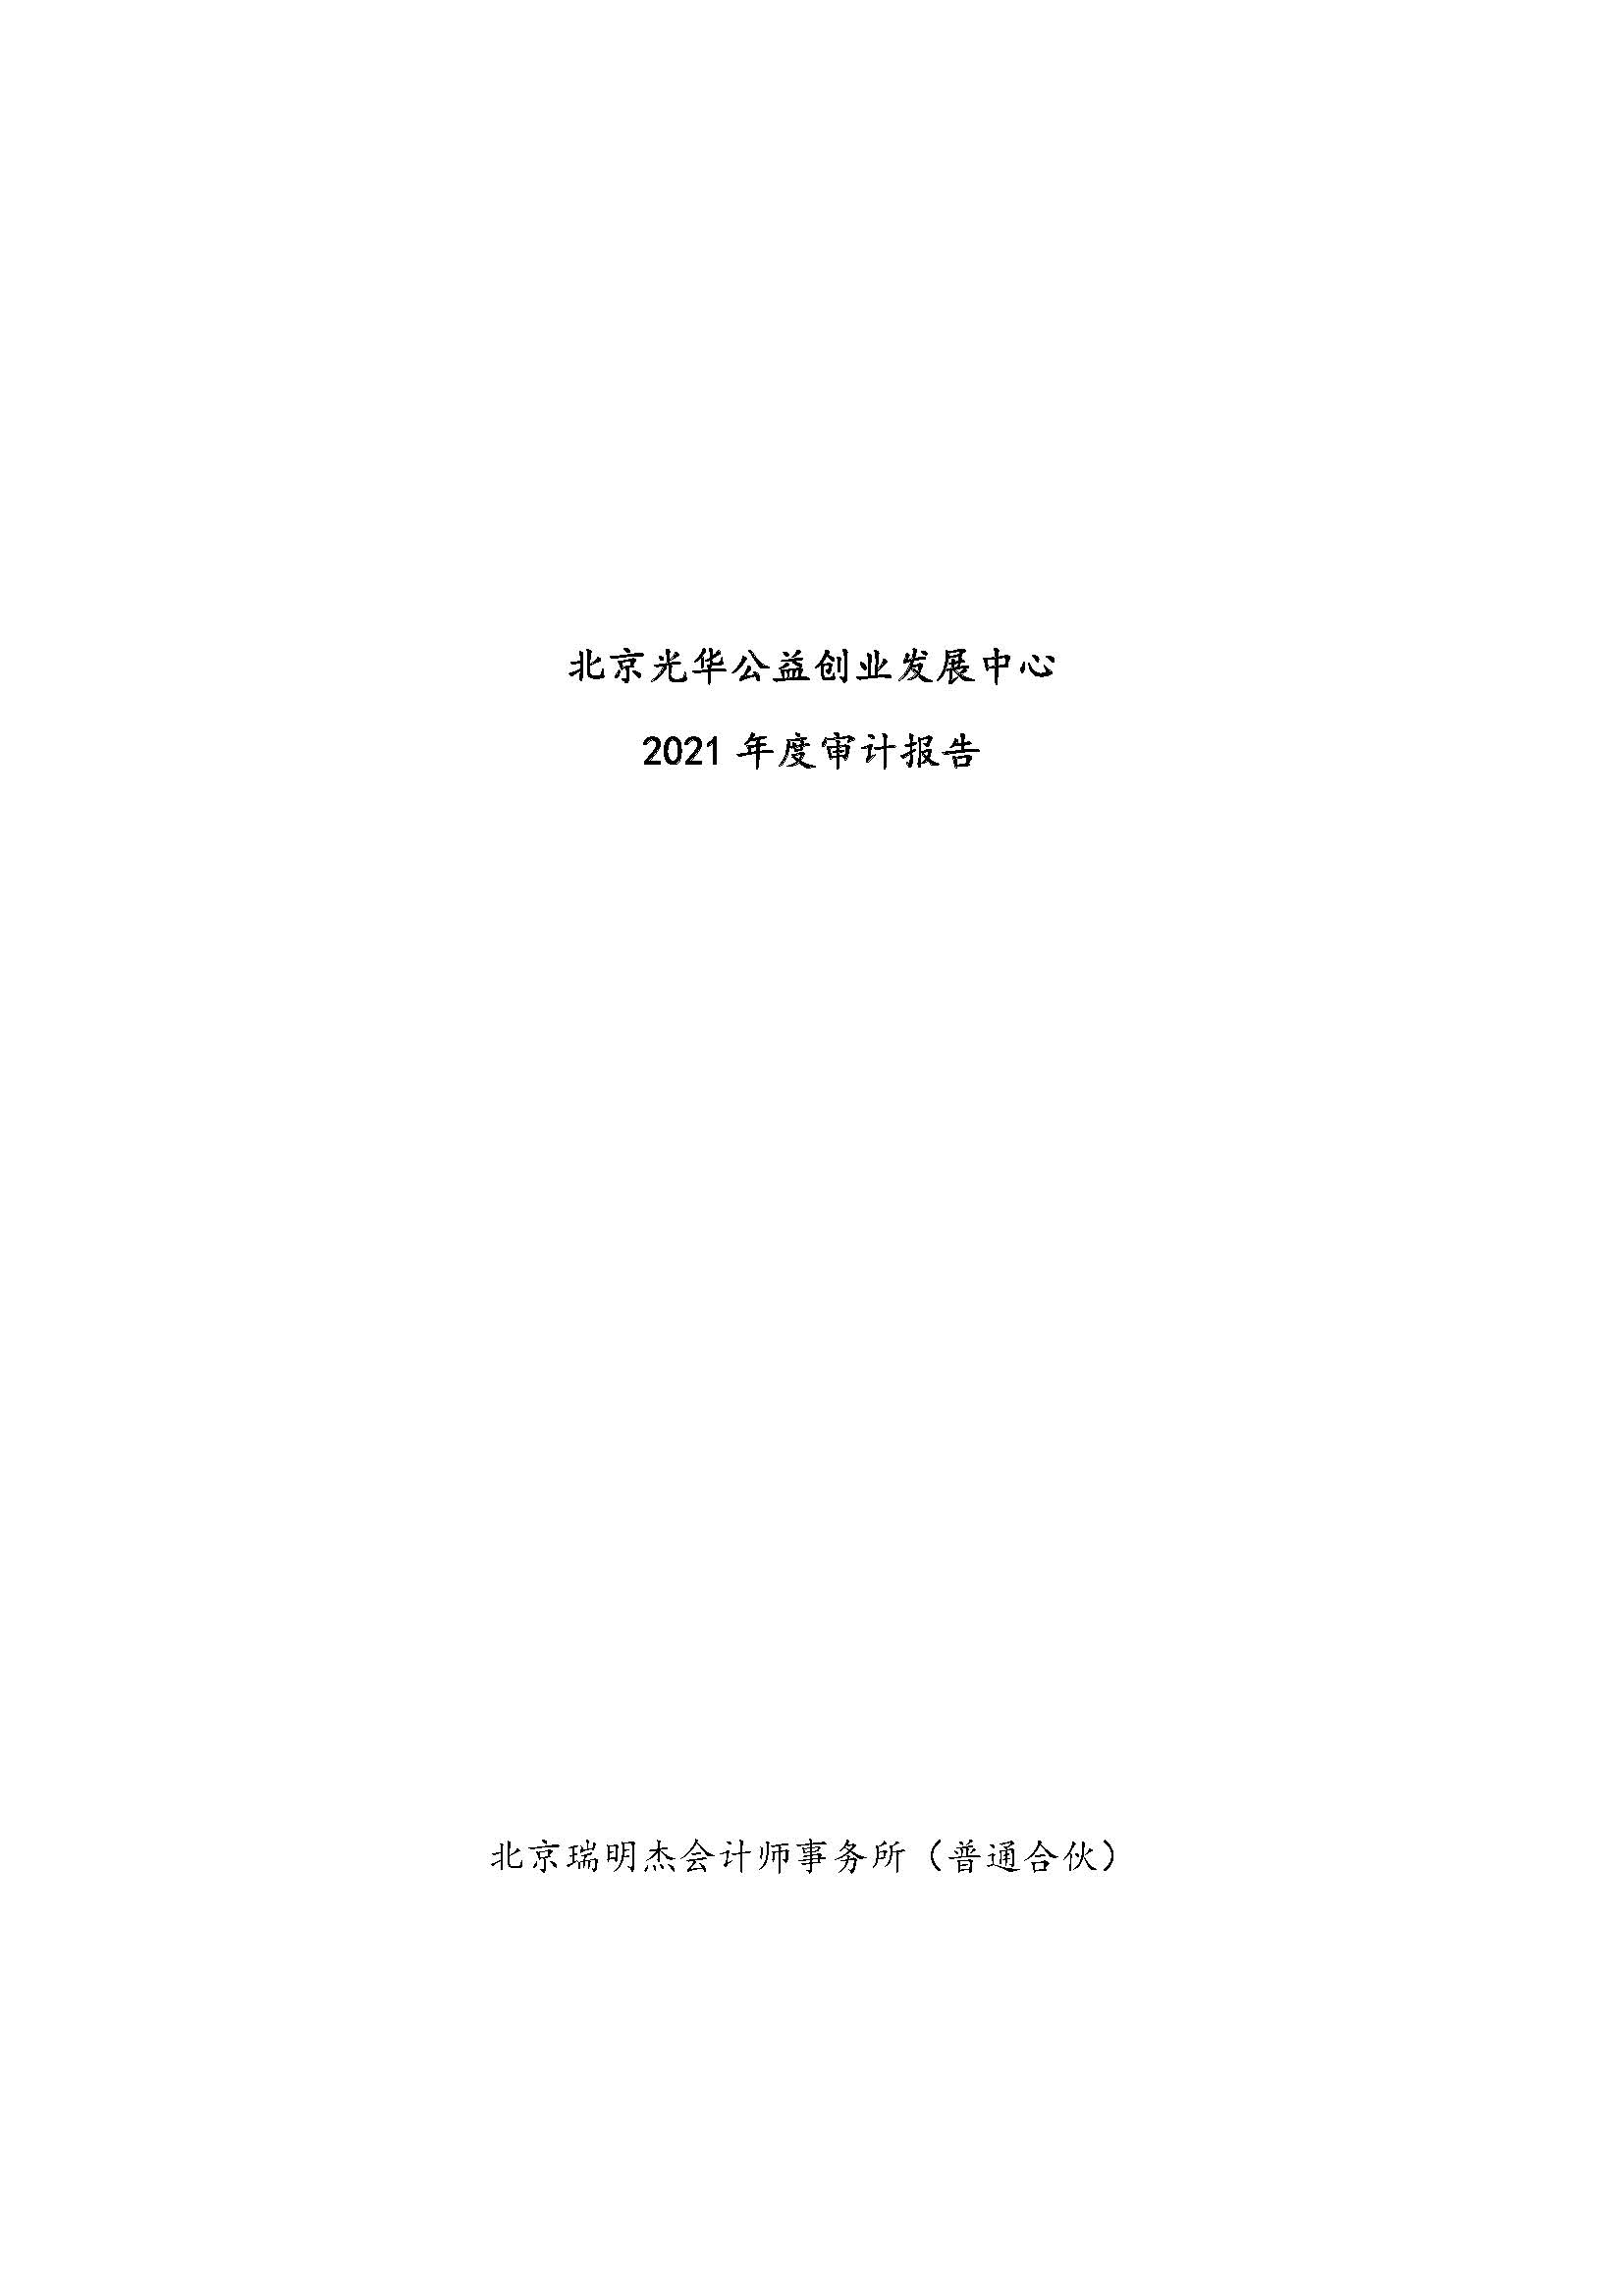 2021年度审计报告（北京光华公益创业发展中心）_页面_01.jpg